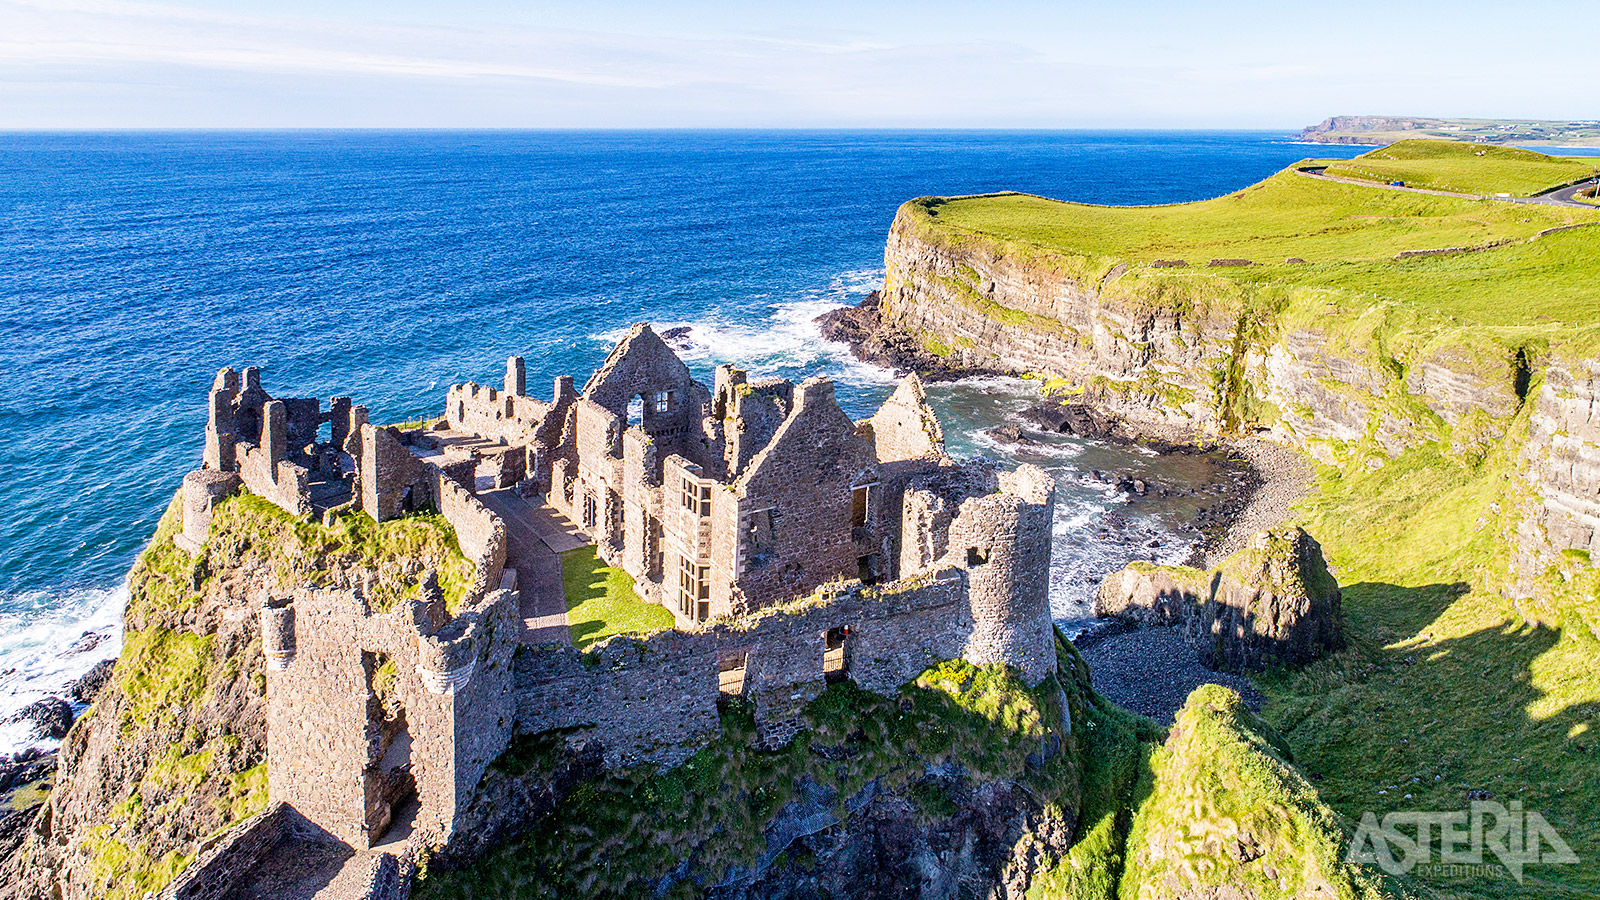 Het eeuwenoude kasteel van Dunluce was ooit een symbool van macht, gebouwd op de rand van een basaltklif met uitzicht op de Ierse zee